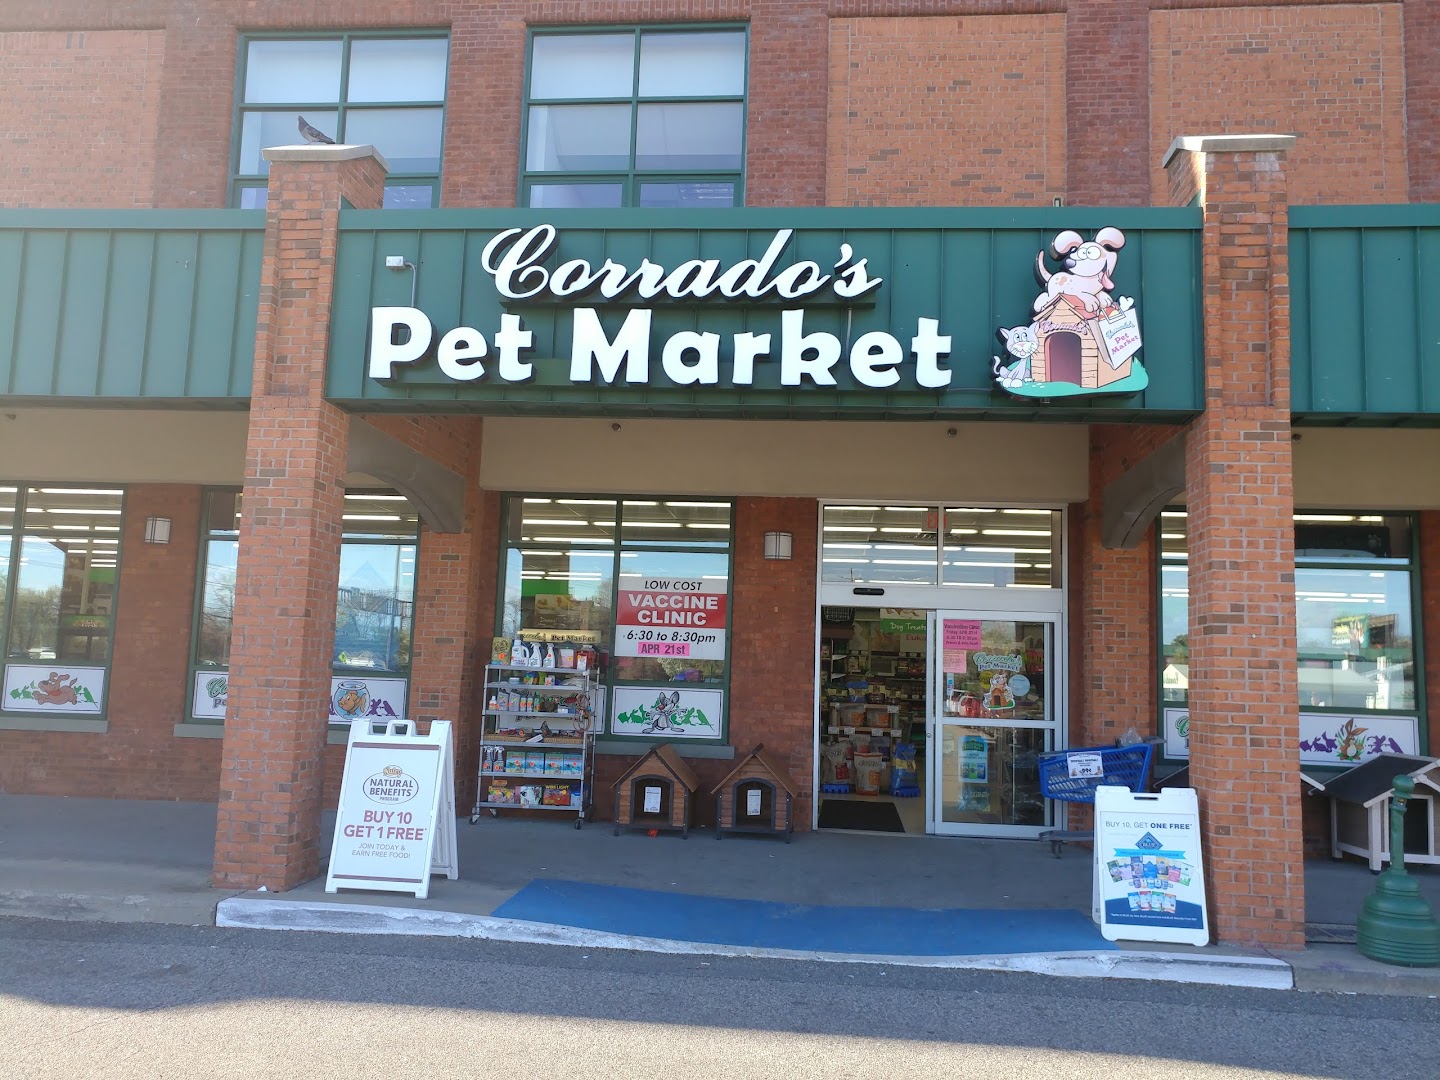 Corrado's Pet Market